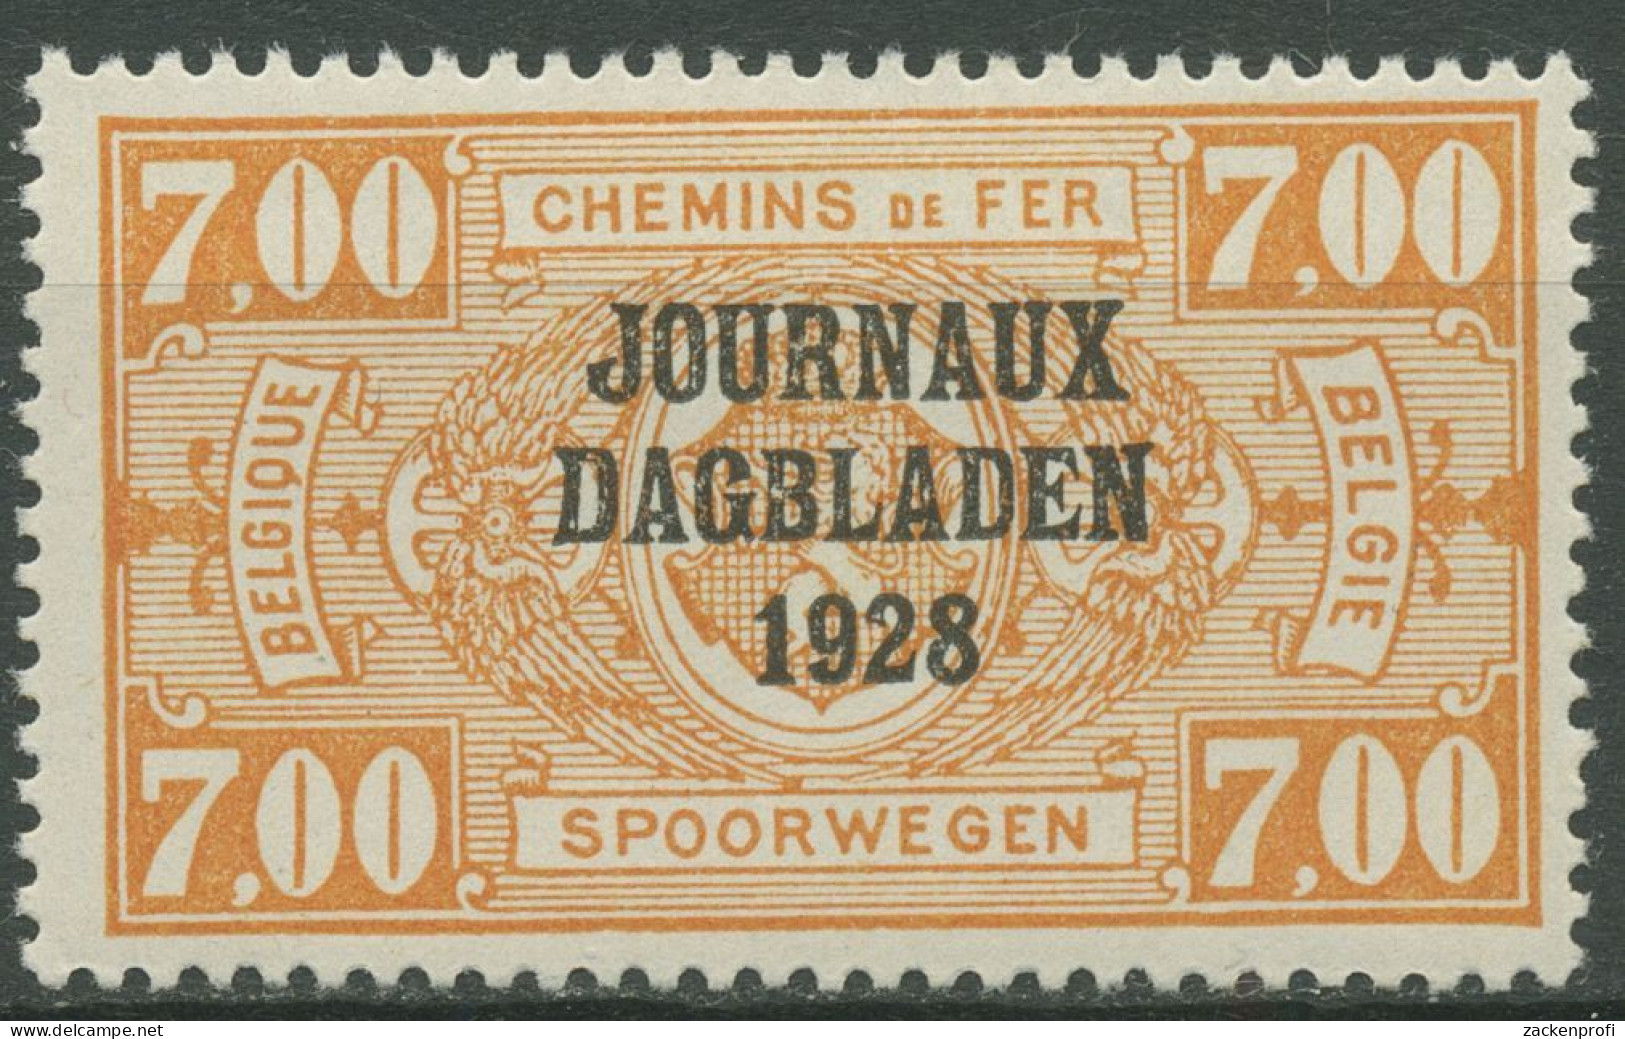 Belgien 1928 Zeitungspaketmarke Mit Aufdruck ZP 15 Mit Falz - Journaux [JO]